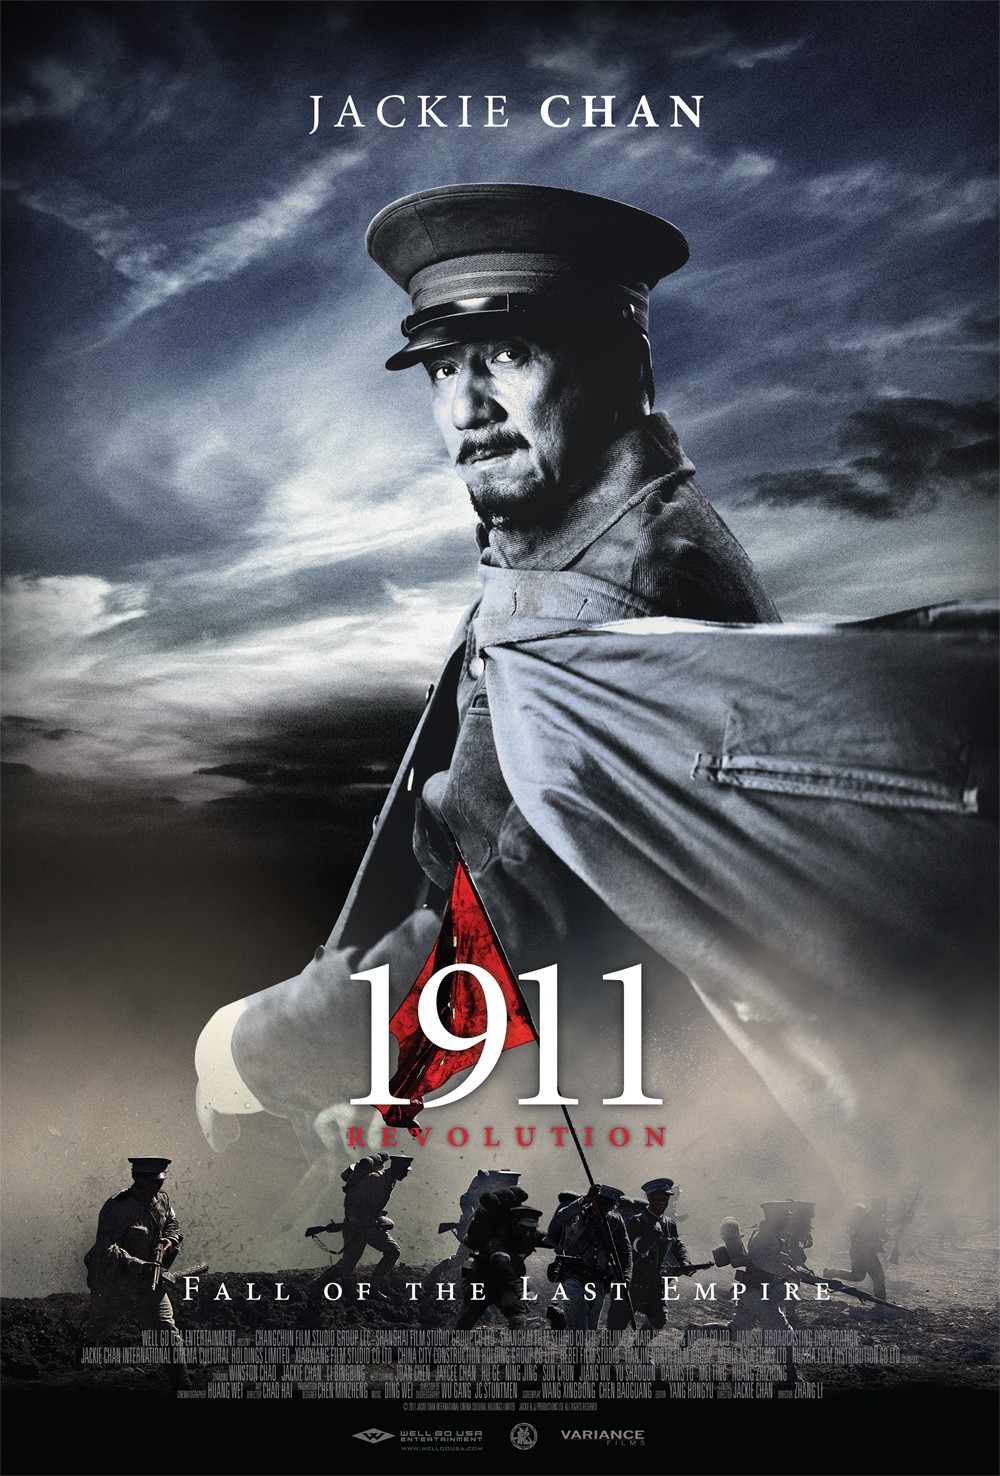 1911 [2011] / 1911 Revolution